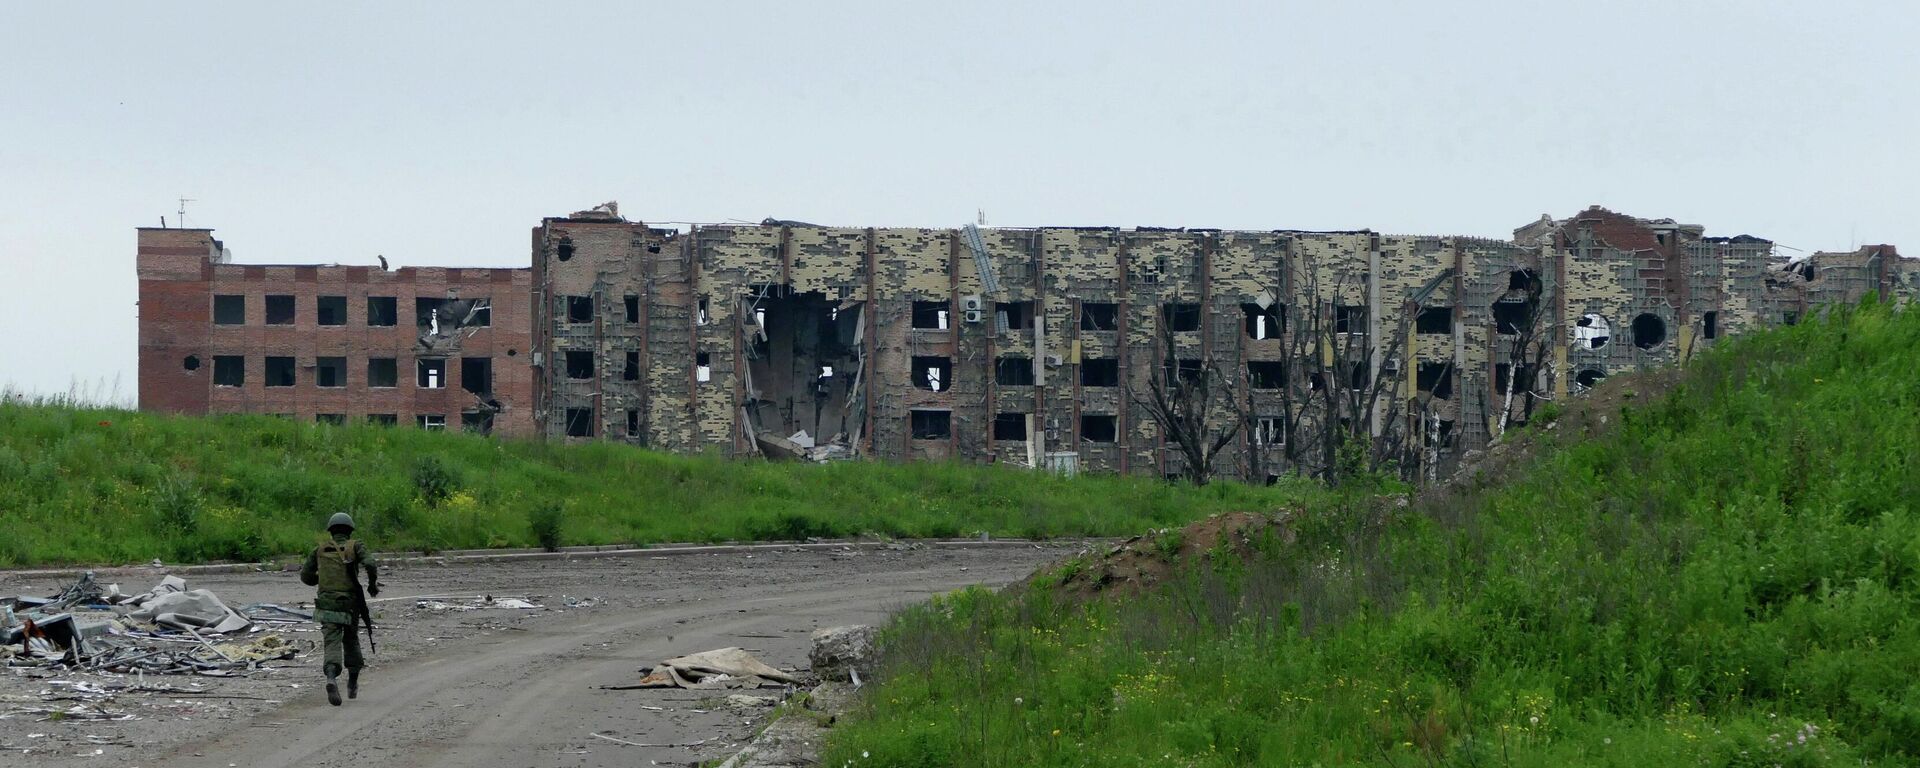 Разрушенные здания на территории Донецкого аэропорта. - Sputnik Абхазия, 1920, 27.05.2022